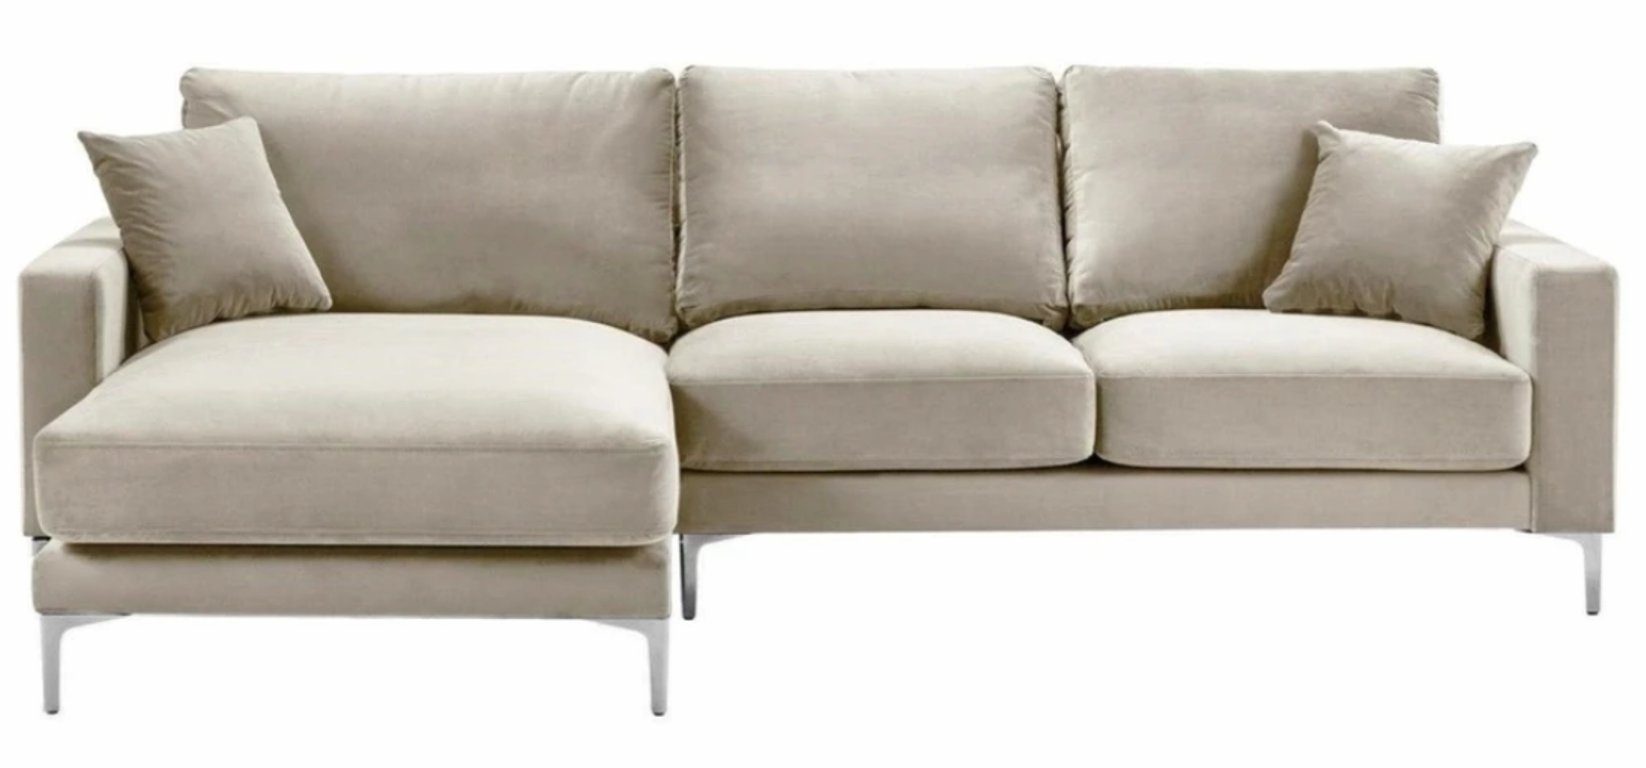 Brandneu, Ecksofa Made in Beige L-Form modernes Europe JVmoebel Eckcouch Luxus Polstermöbel Sofa